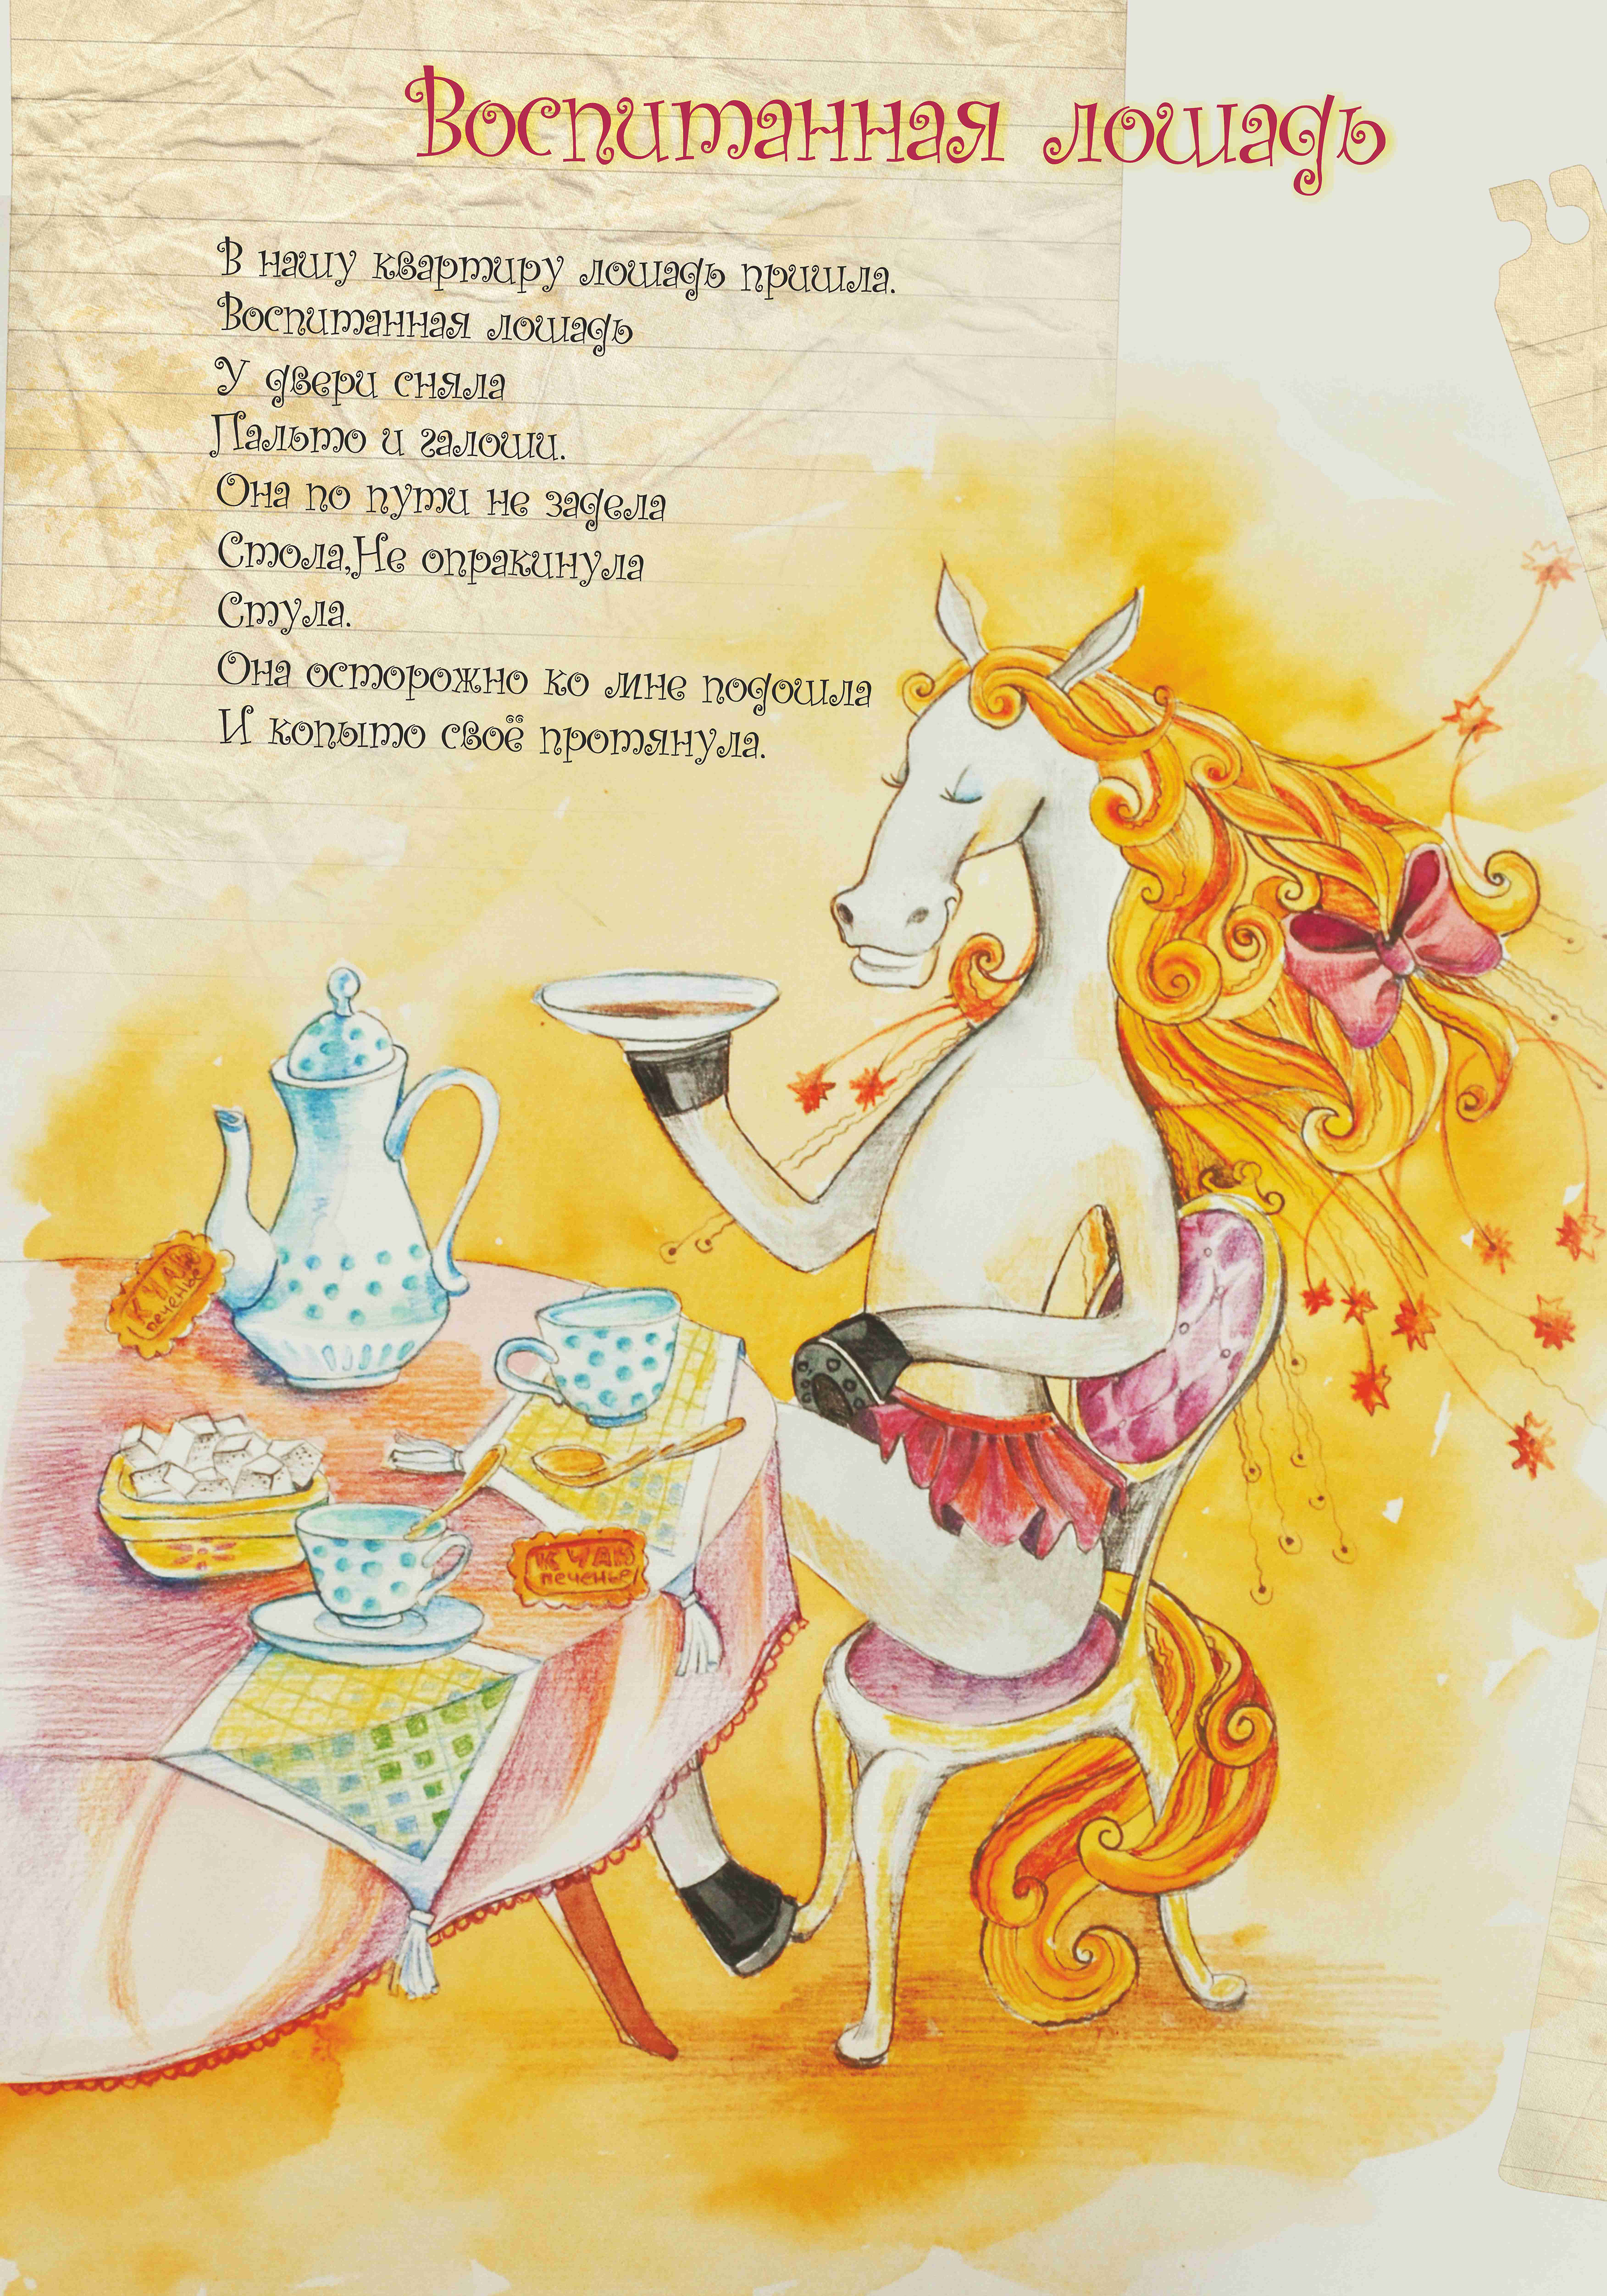 Лошадь пьет чай. Стихотворения Сапгира воспитанная лошадь. Воспитанная лошадь Сапгир.